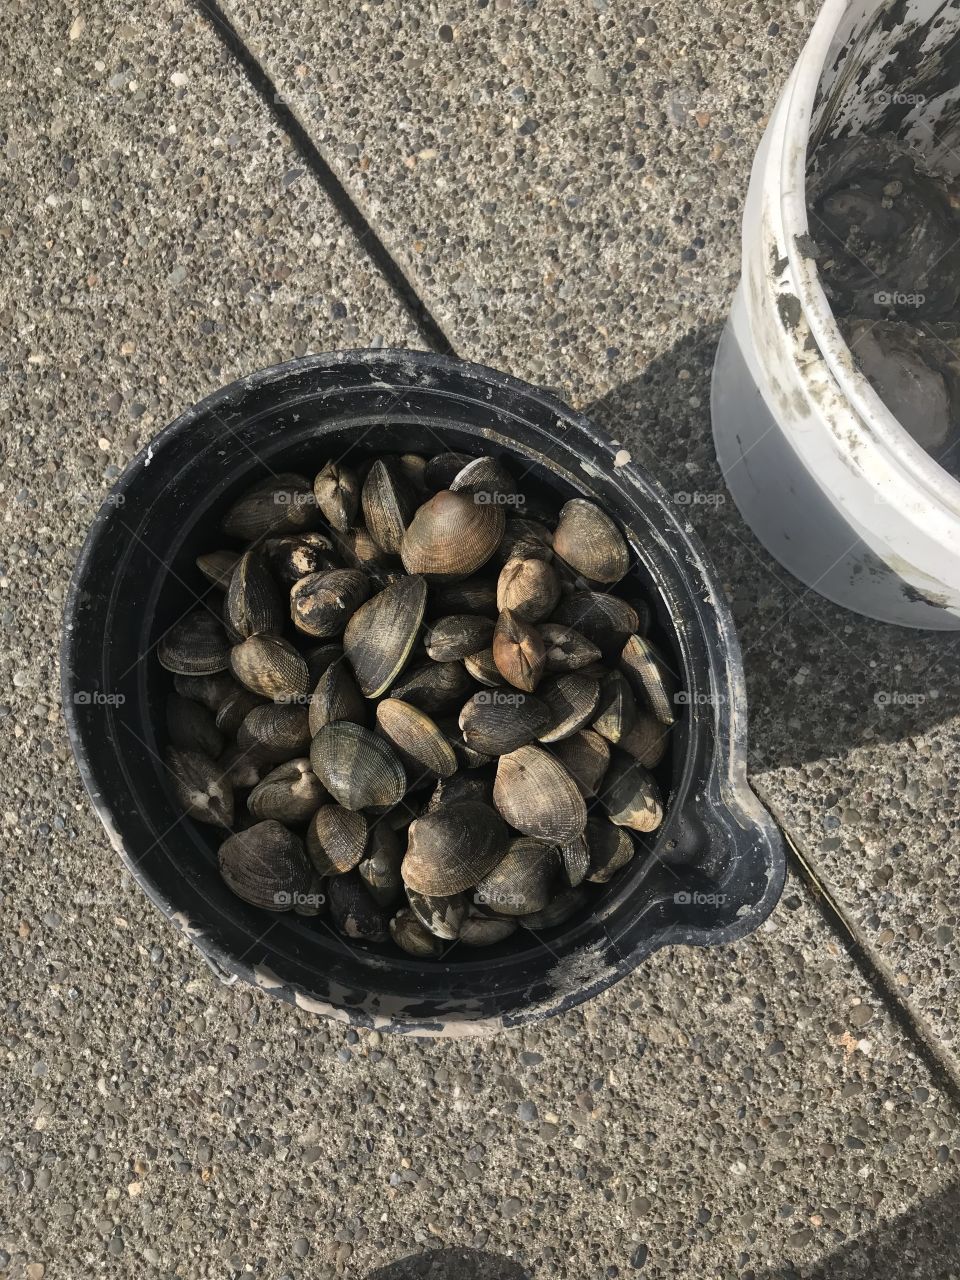 Steamer clams